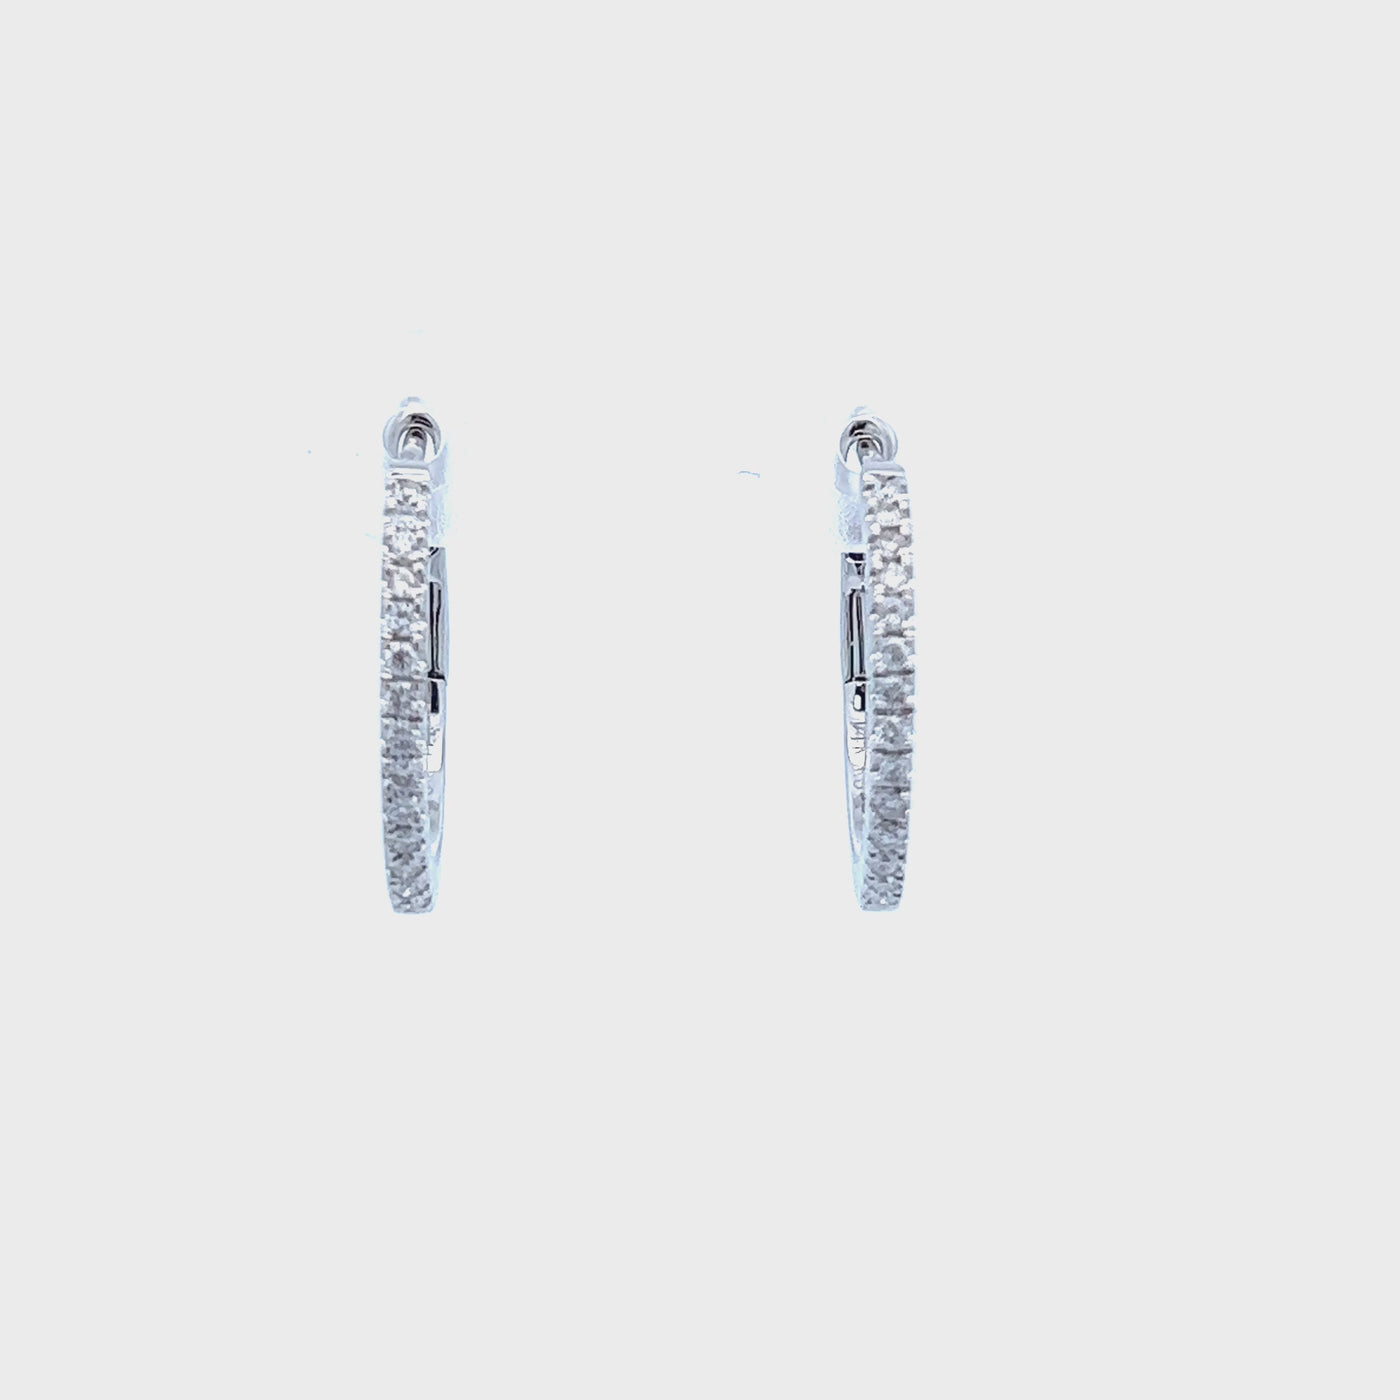 14k White Gold Round Diamond Hoop Earrings (0.22ctw.)